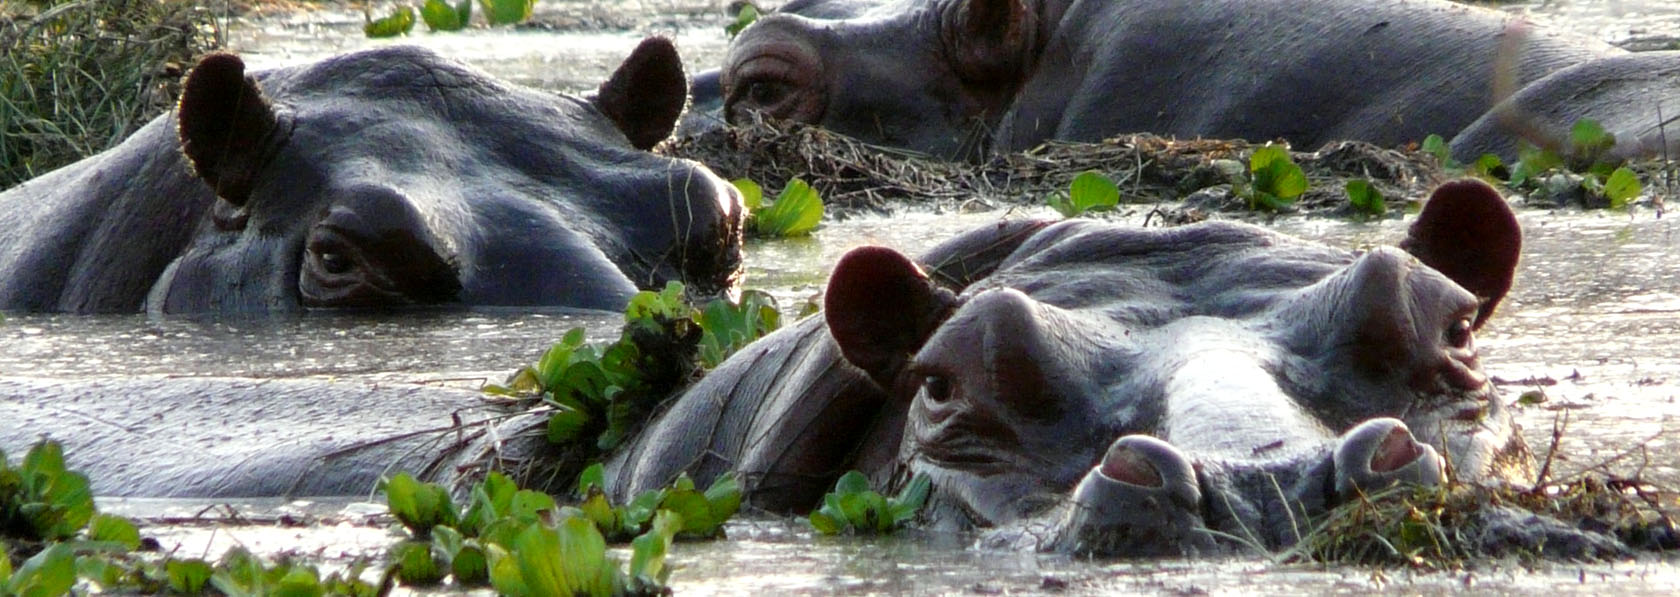 hippopotame marin des bijagos dans leur mare de l'ile d'orango